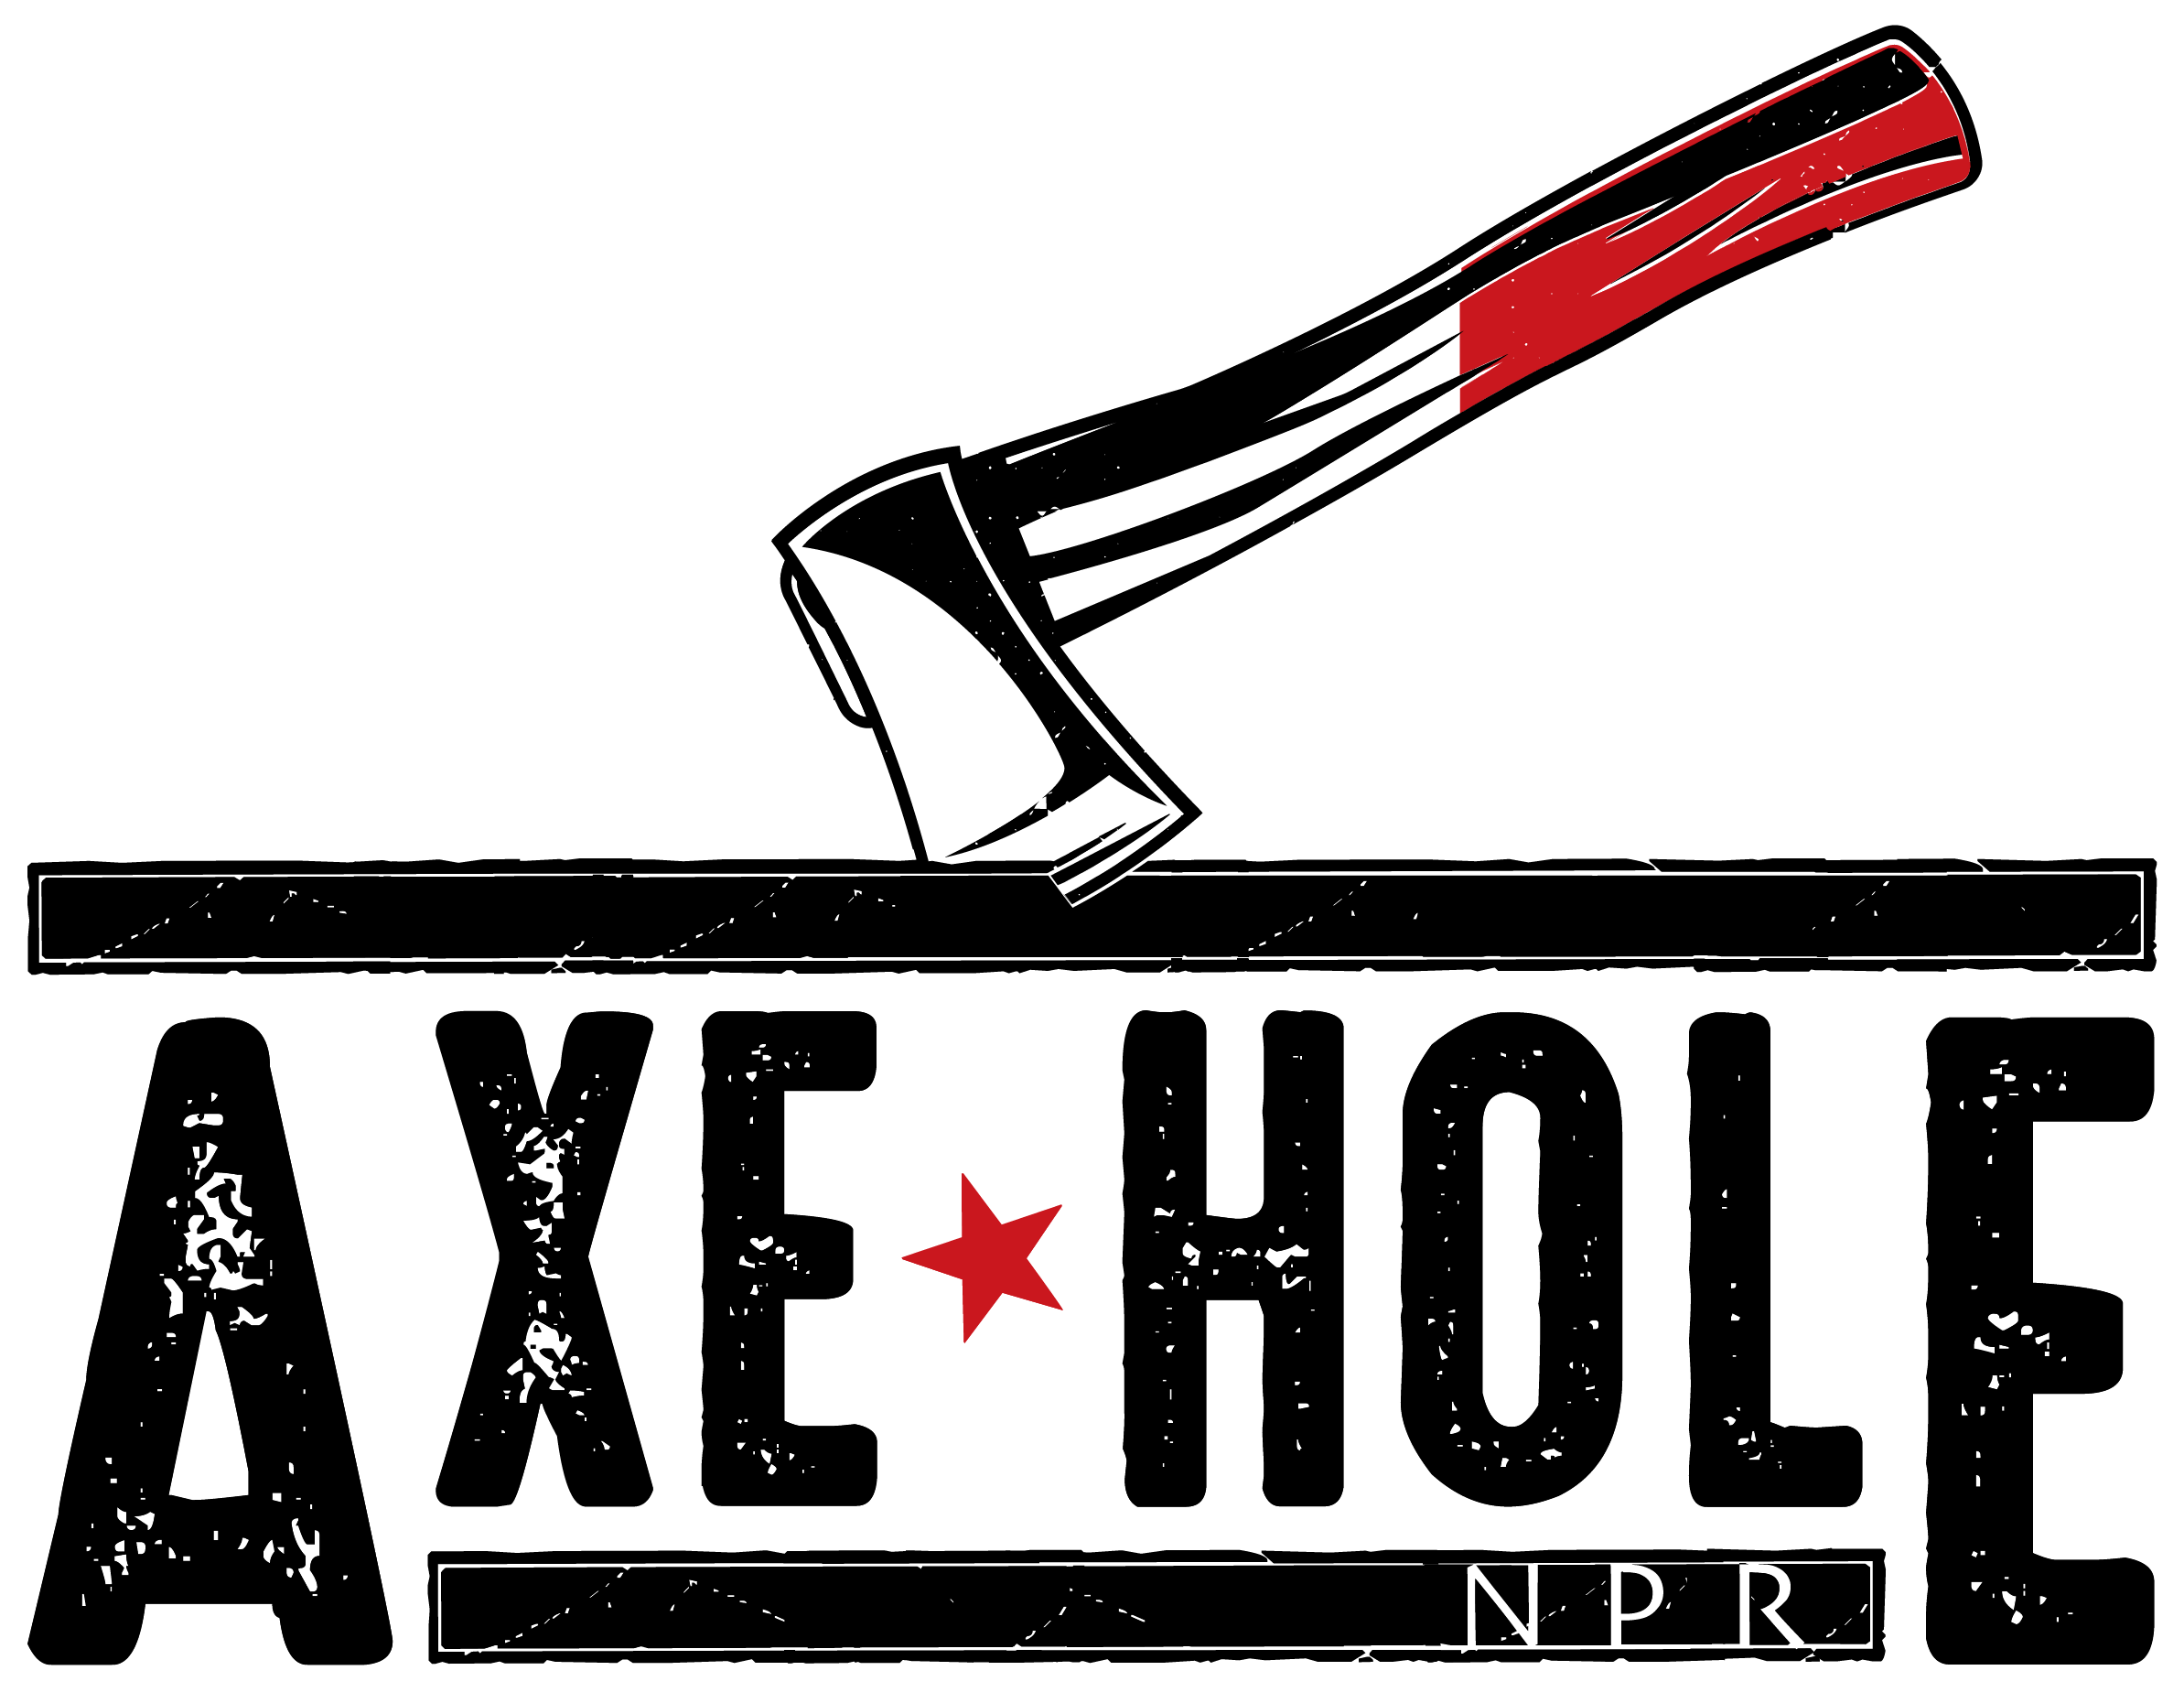 Axe Hole NPR